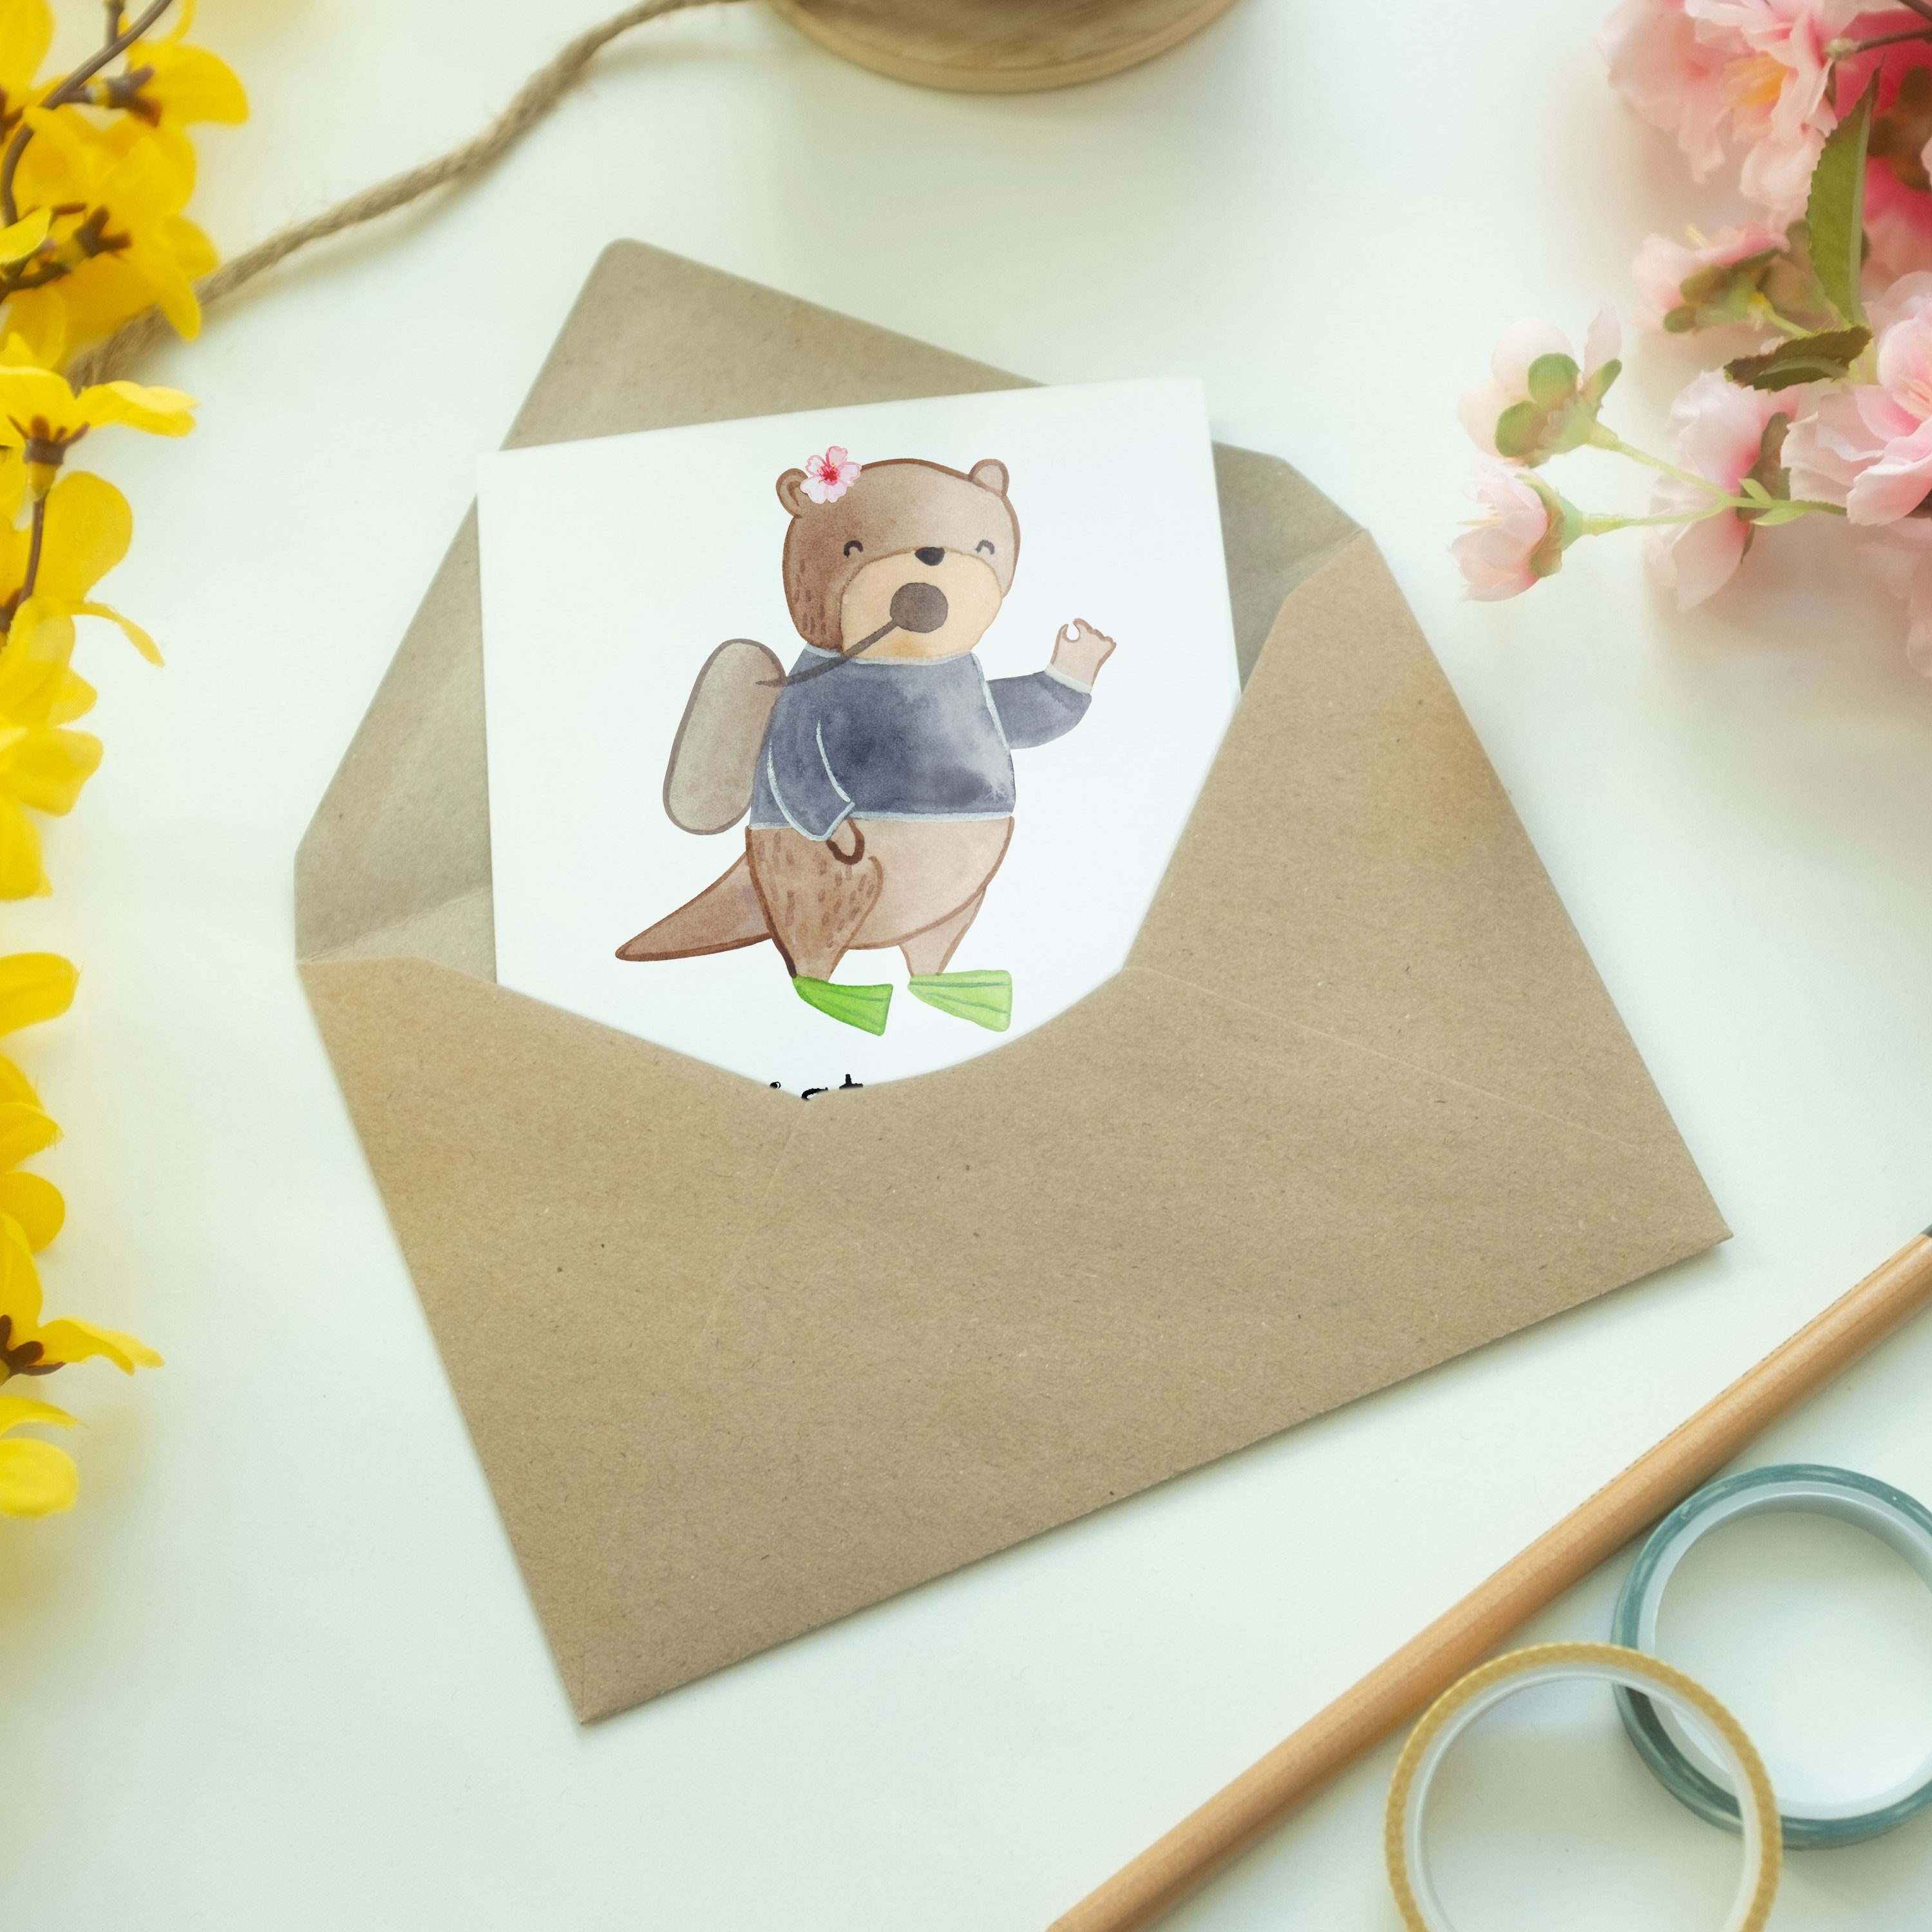 Mr. & Mrs. Herz - Klappkarte, Tauchlehrerin Weiß Geschenk, mit Panda Grußkarte Hochzeitskarte 